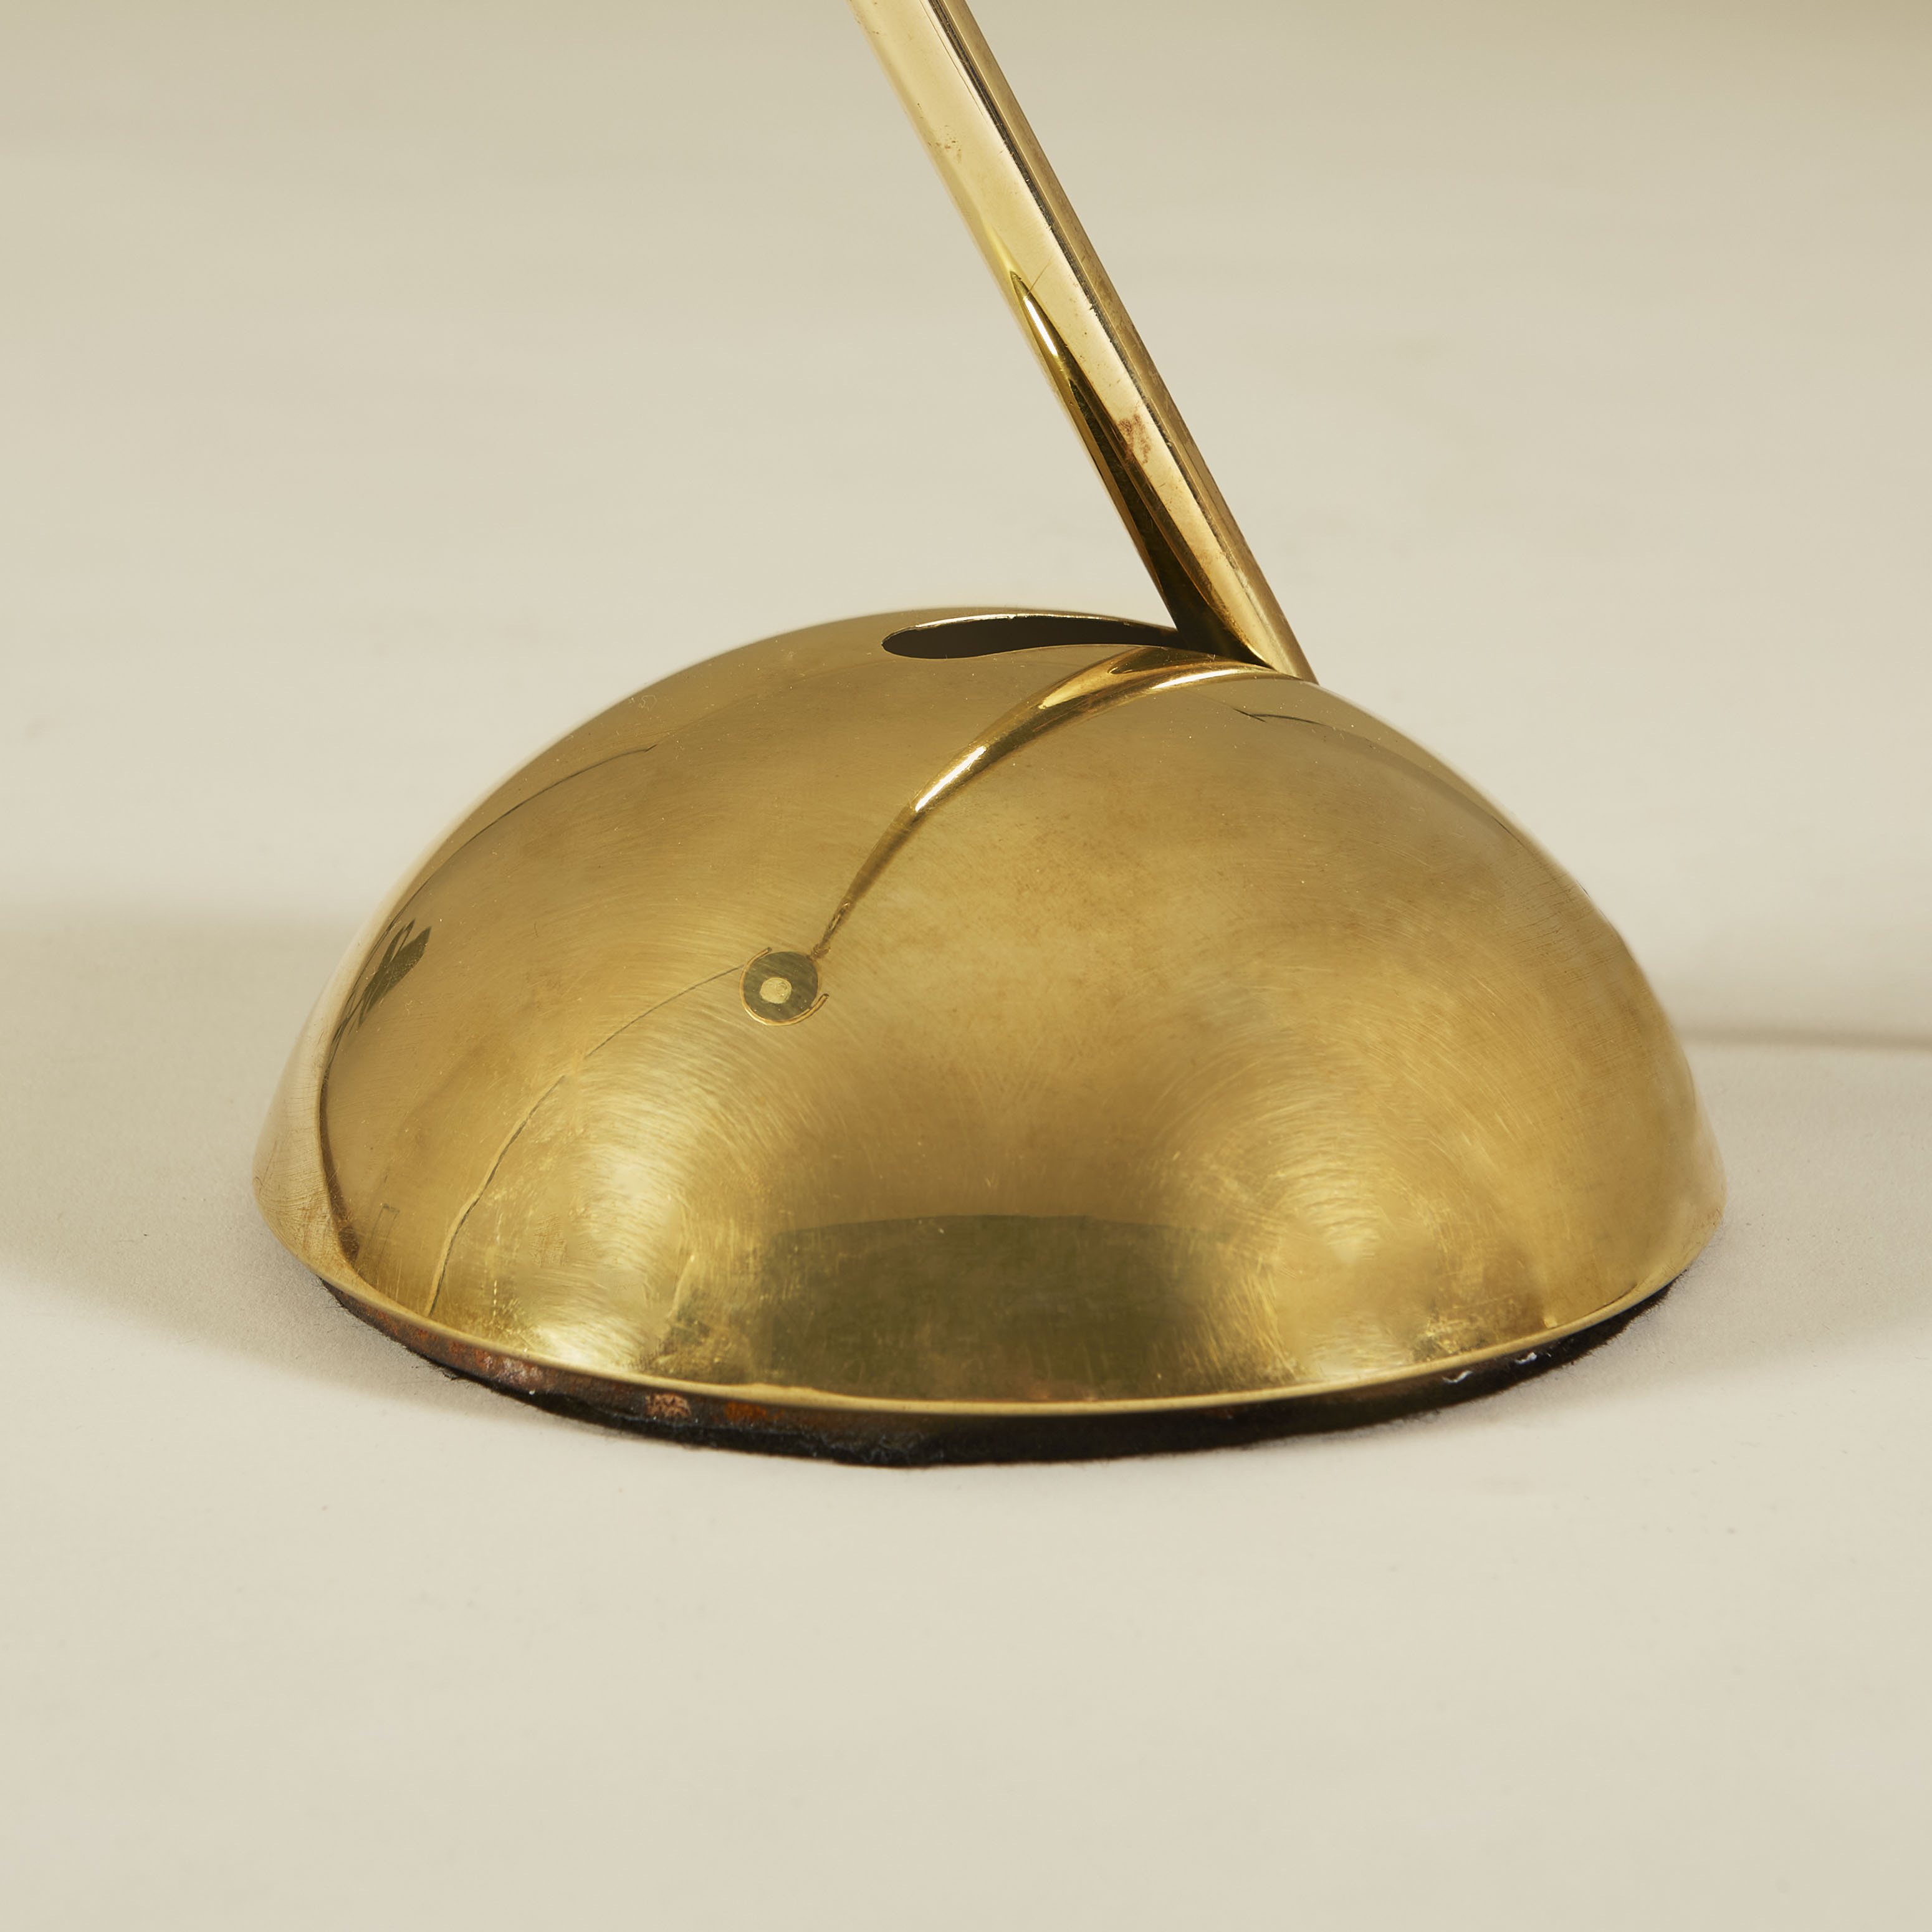 The image for Brass Desk Lamp 159 V1